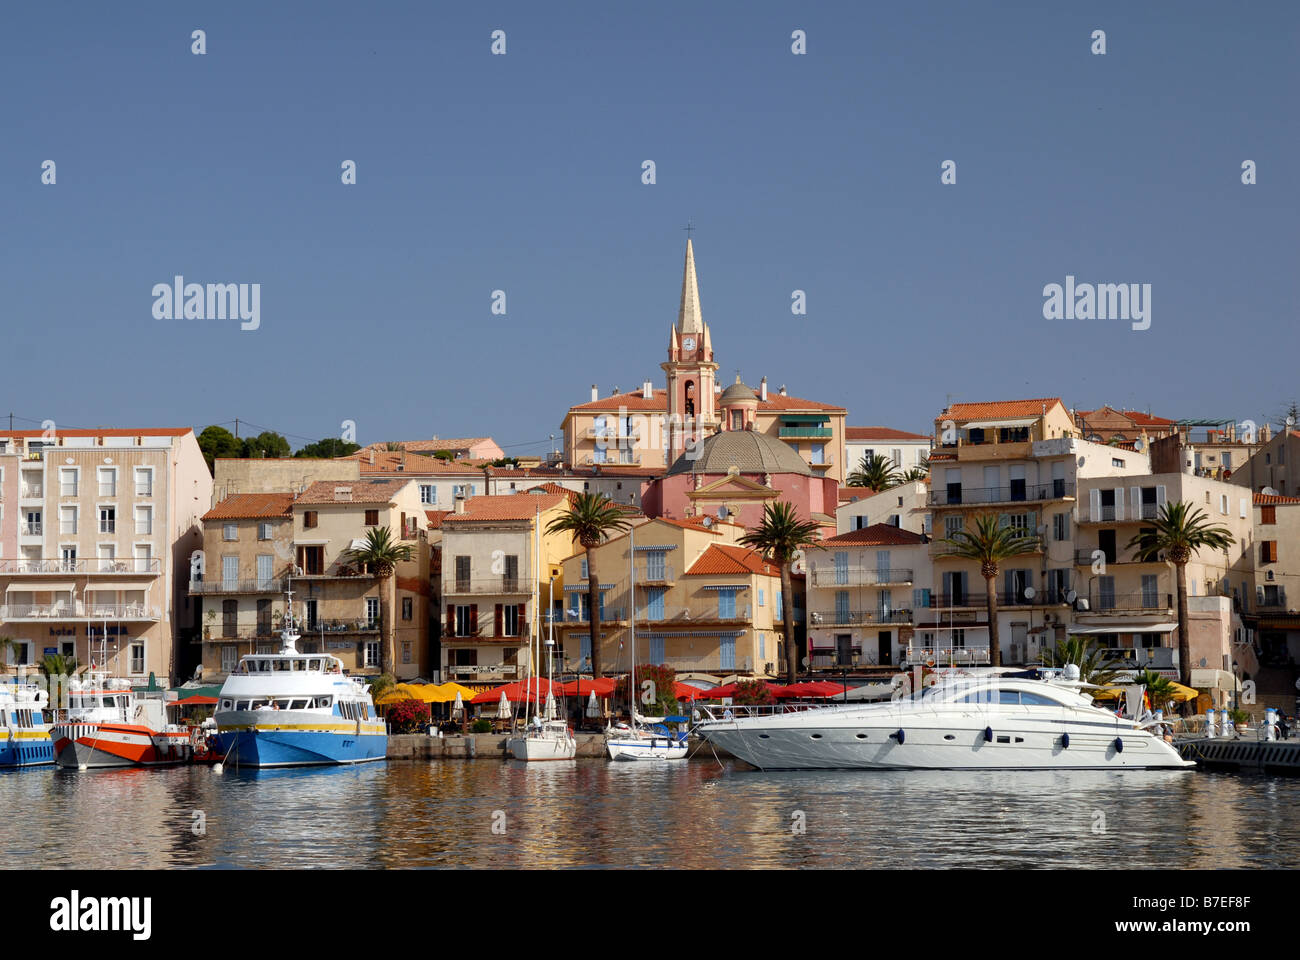 Bateaux au port de plaisance à Calvi, Corse, France Banque D'Images